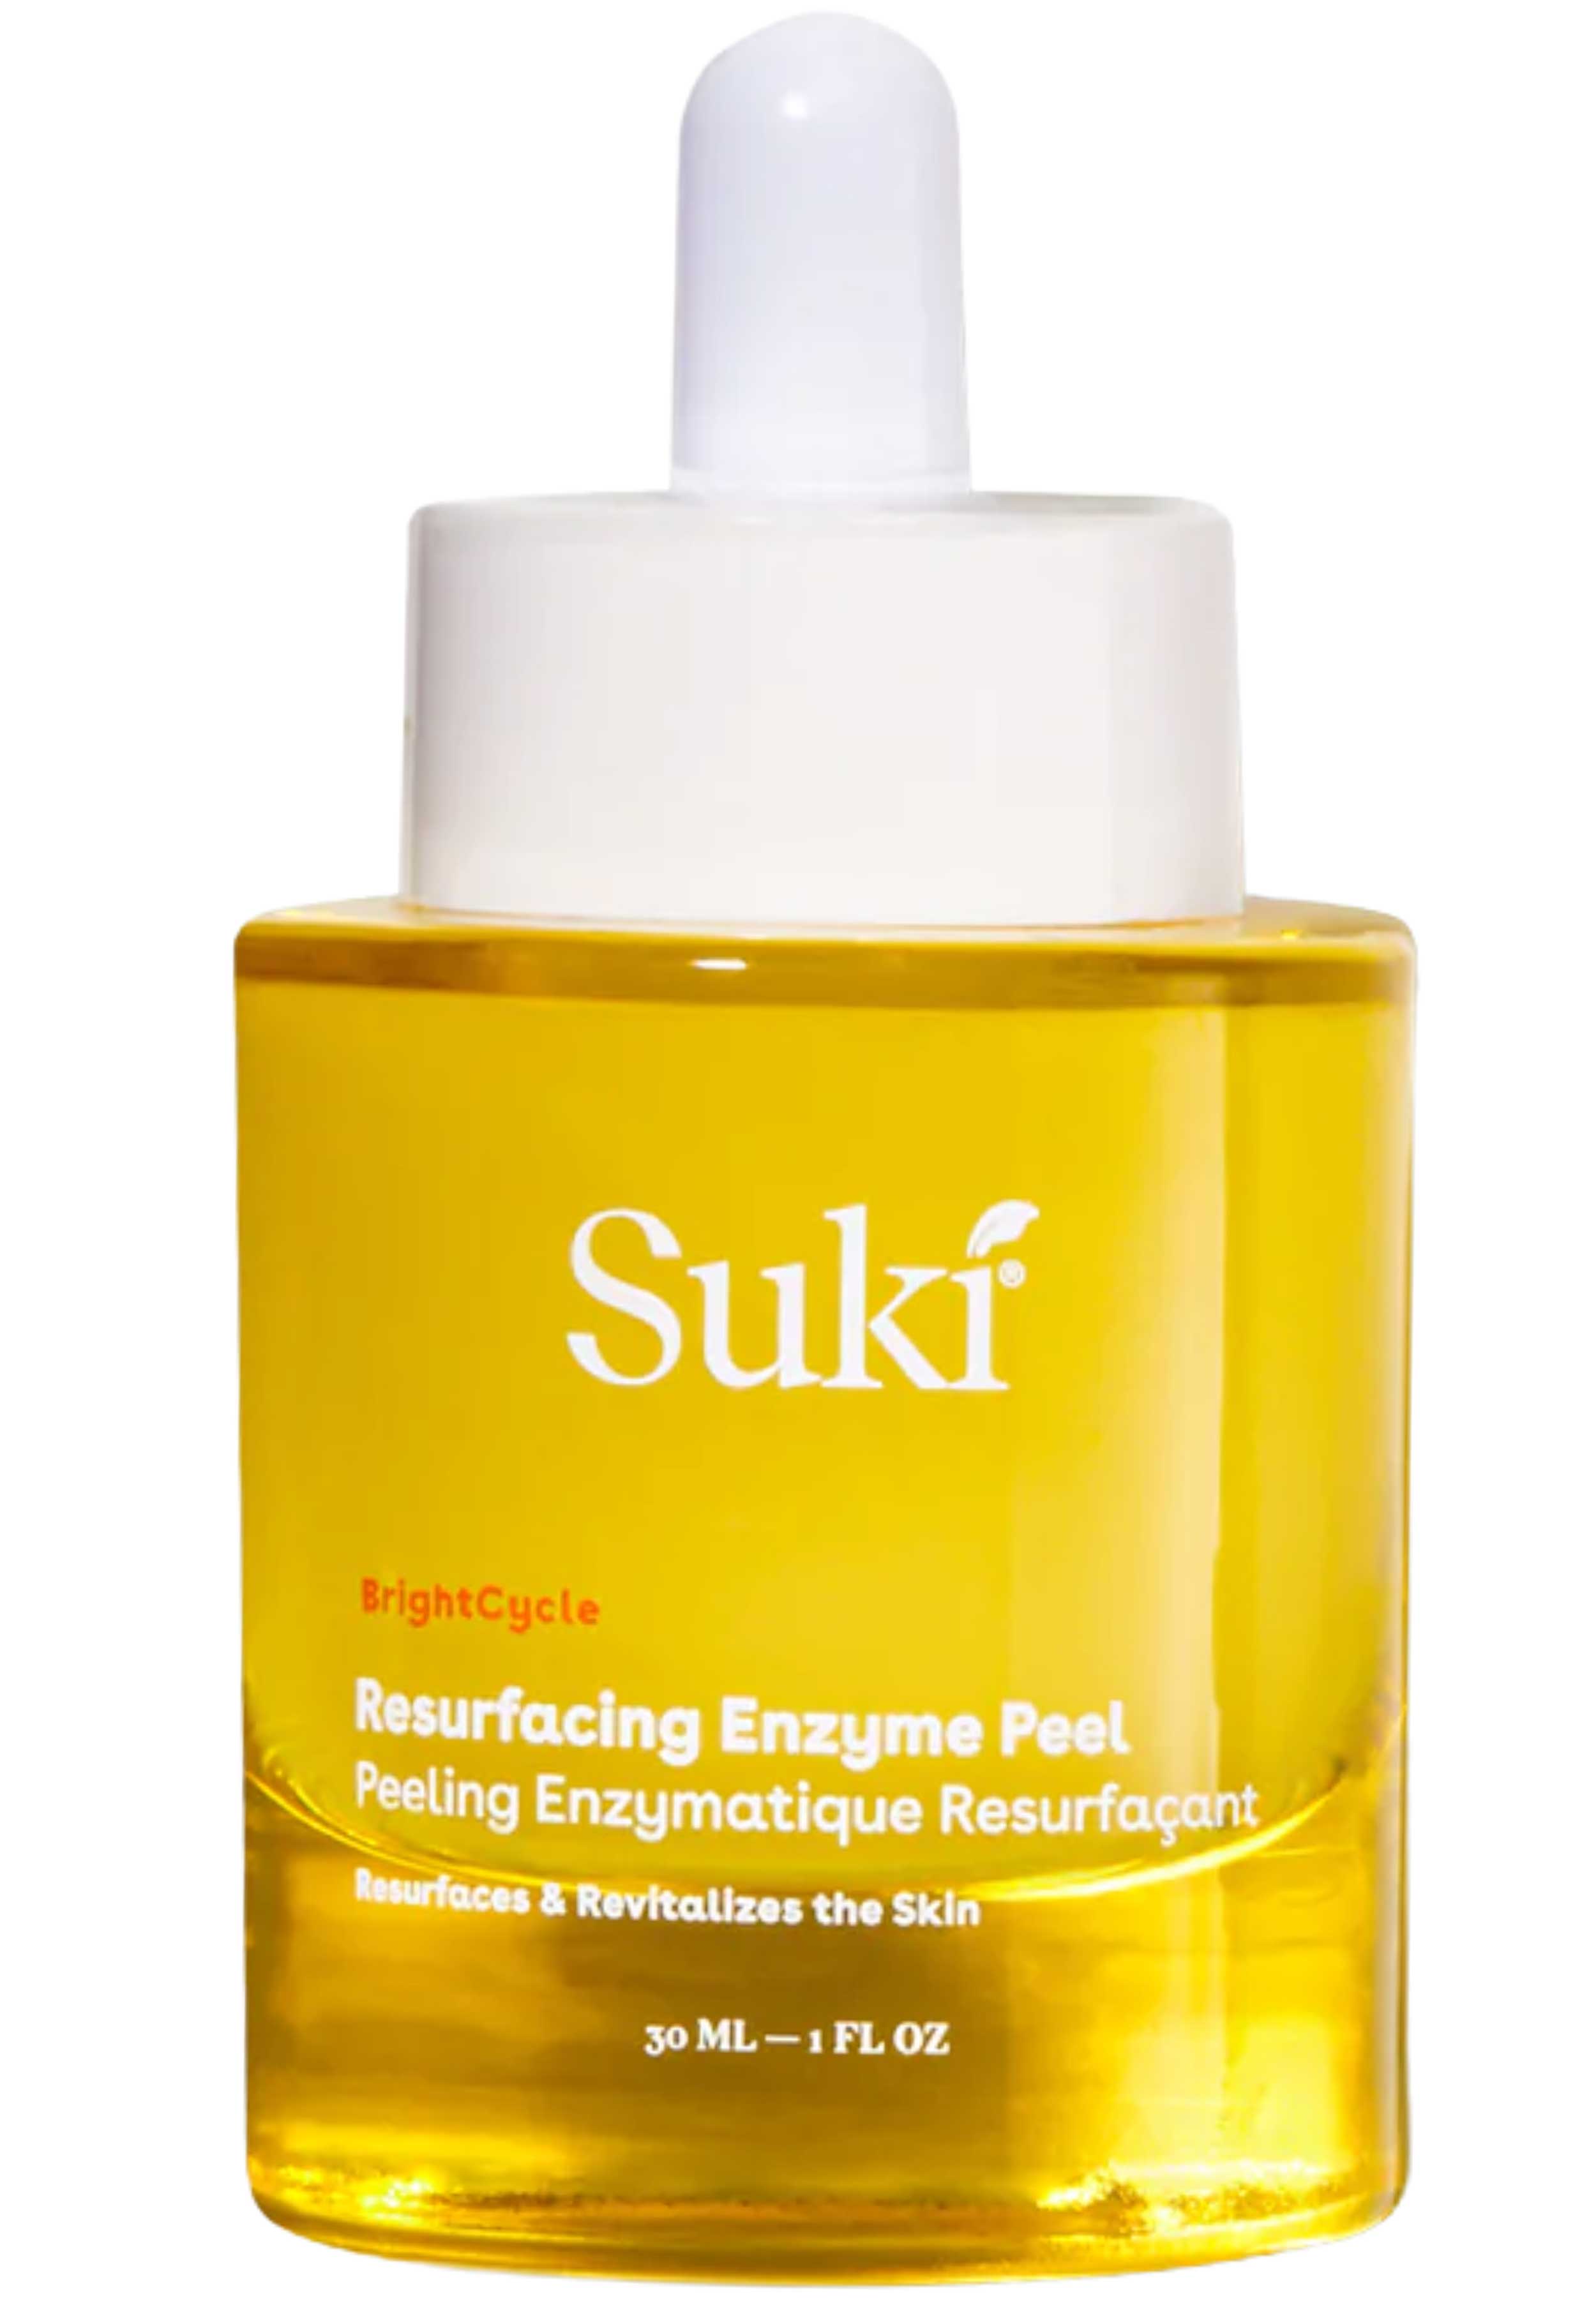 Suki Resurfacing Enzyme Peel